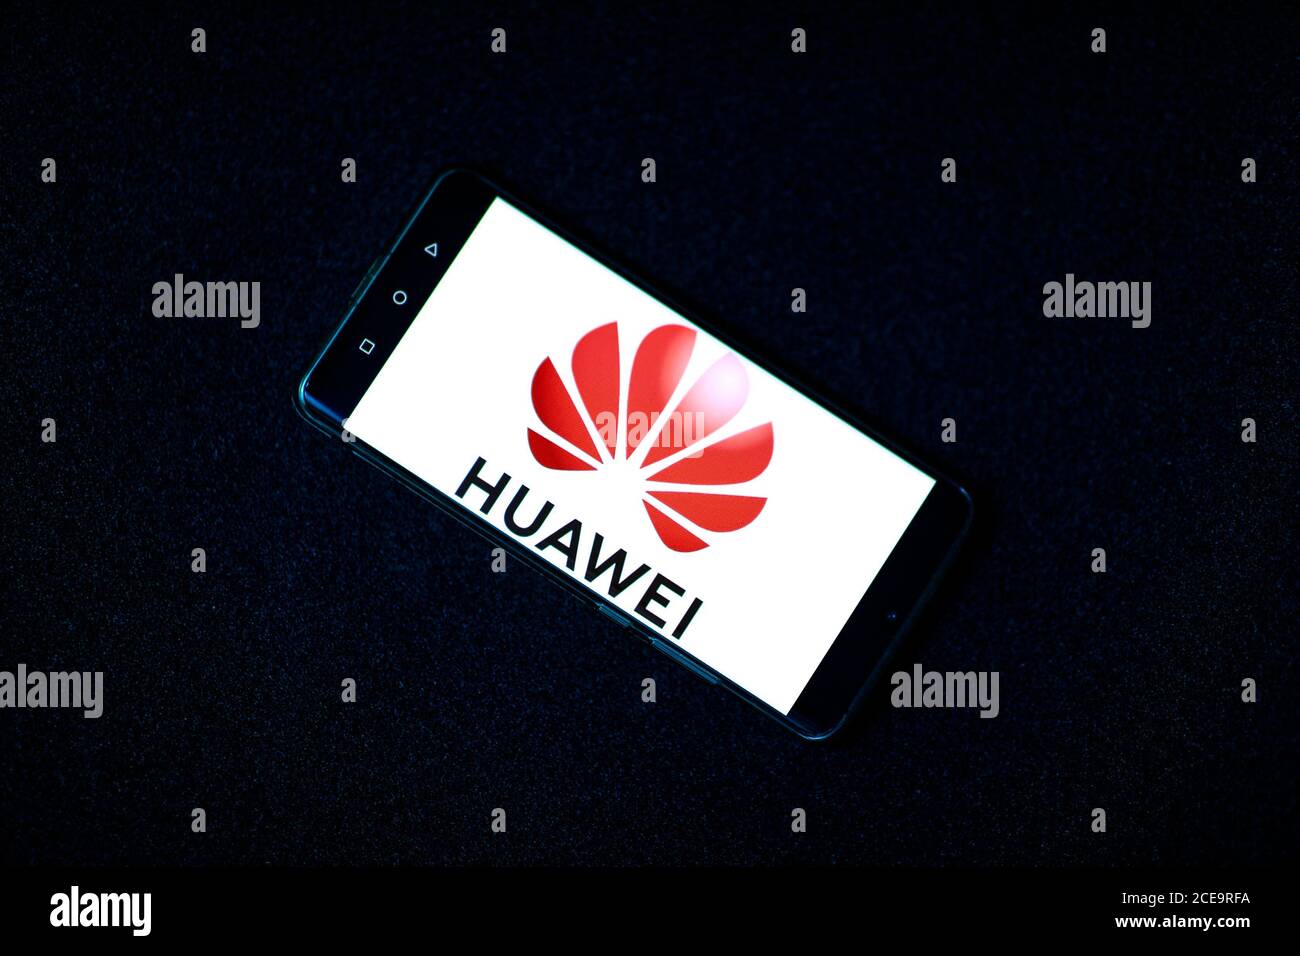 Logo della società di telefonia mobile huawei sul telefono cellulare Huawei P30 Pro. 31.08.2020 Varsavia, Polonia Foto Stock